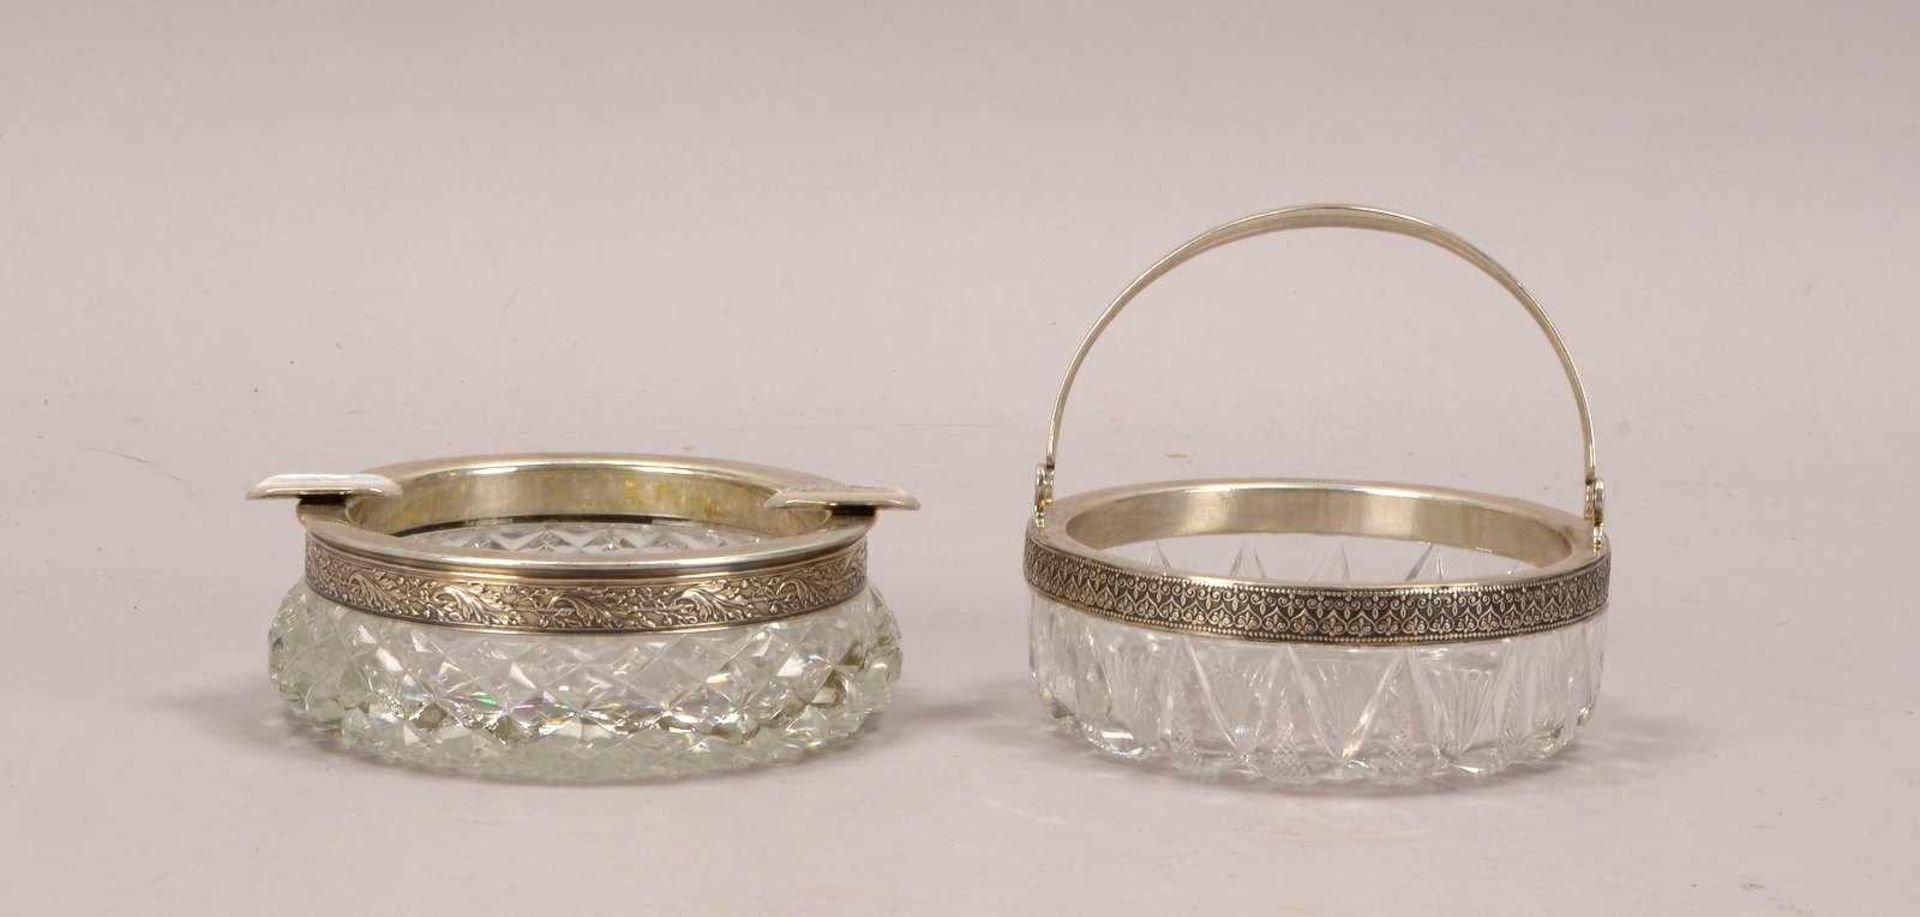 2 Glasgefäße (Russland), geschliffenes Kristallglas: 1 Aschenbecher und 1 Henkenschale, jeweils